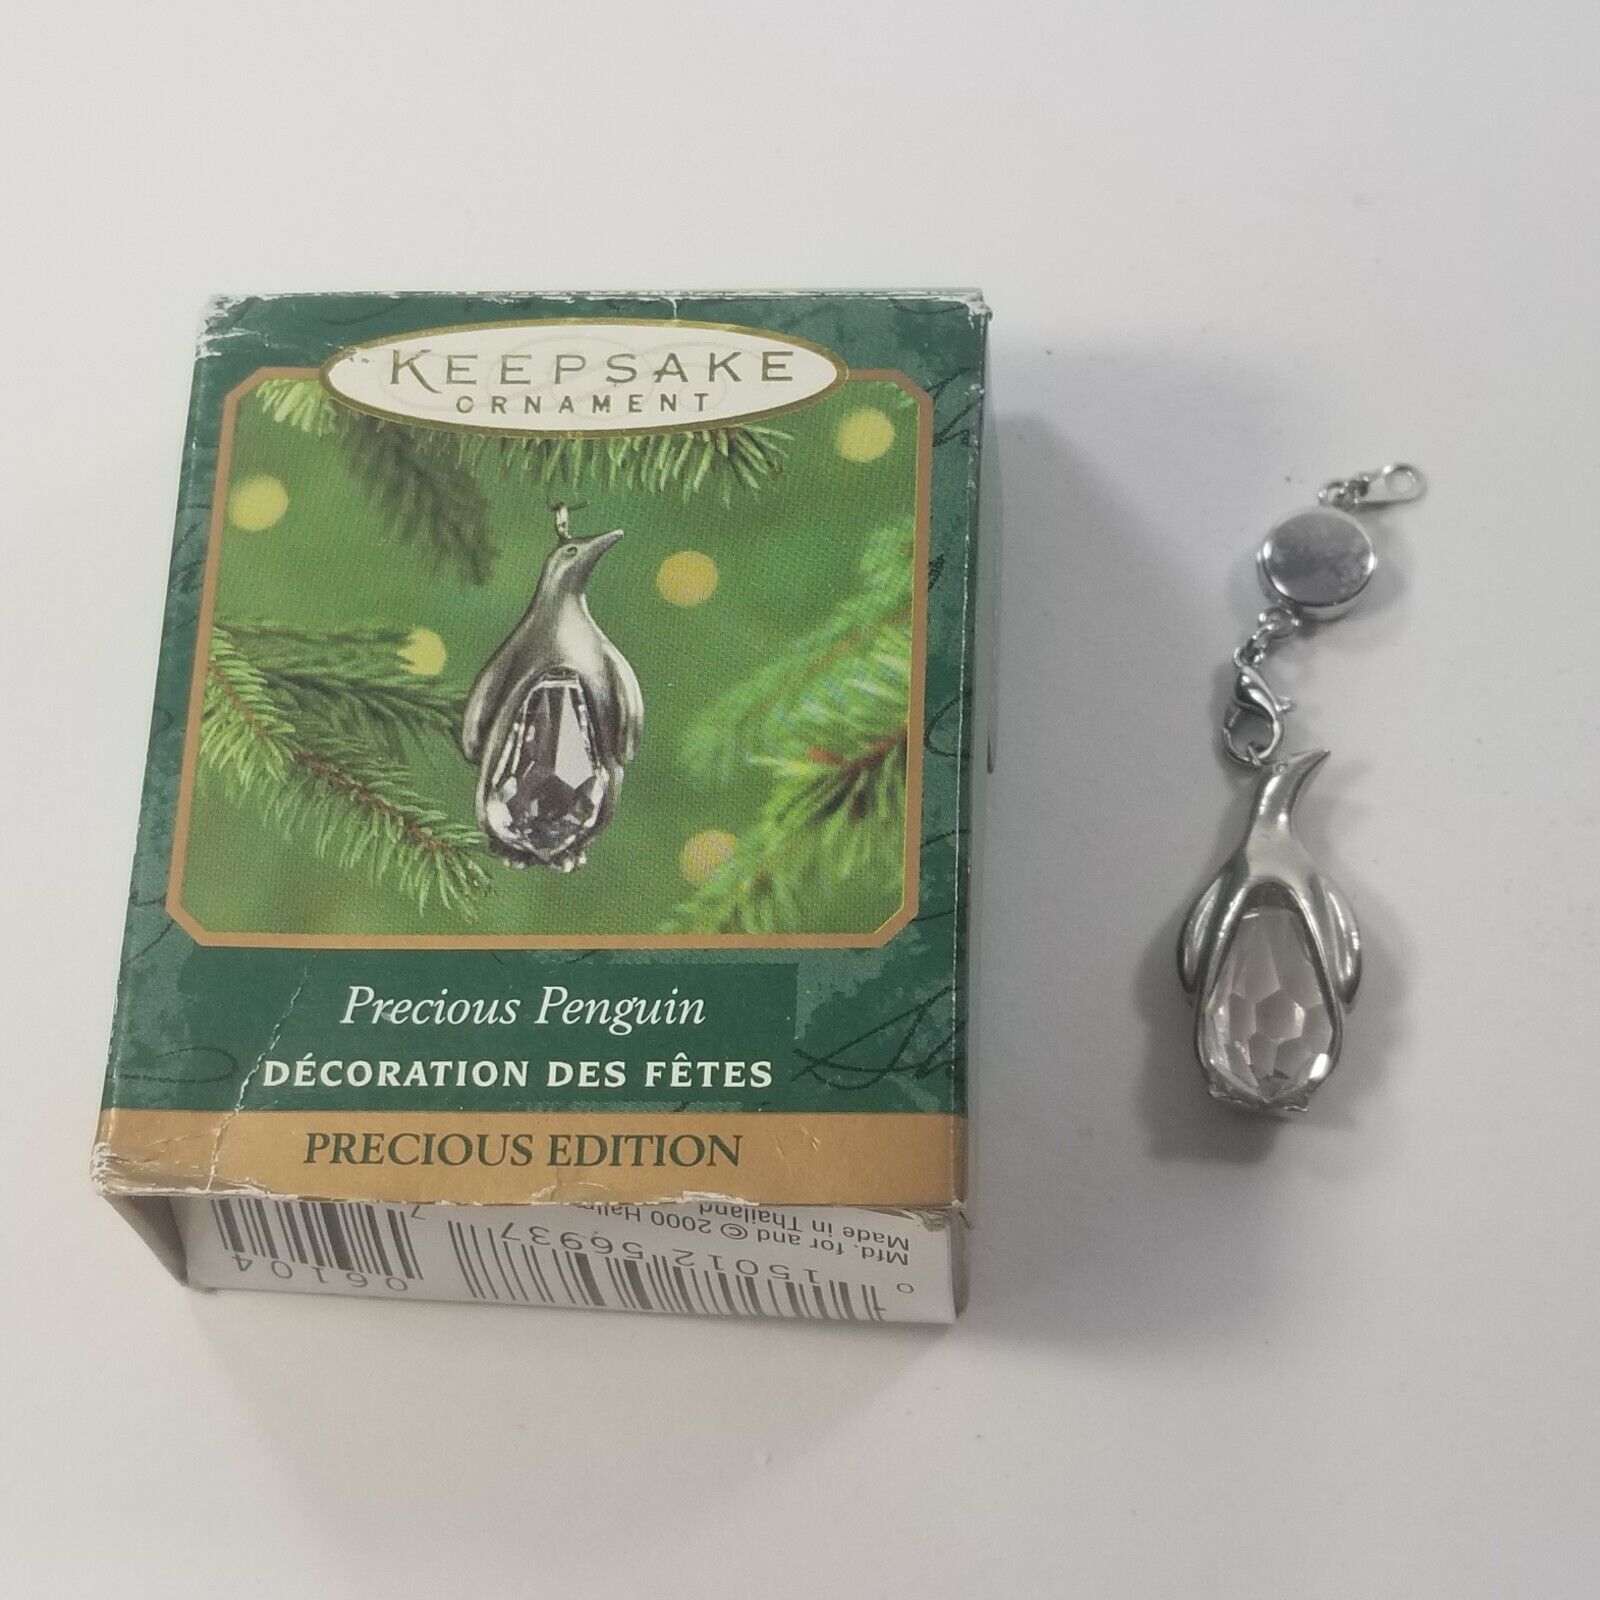 ☀️Hallmark Keepsake Ornament PRECIOUS PENGUIN Crystal & Metal Miniature 2000